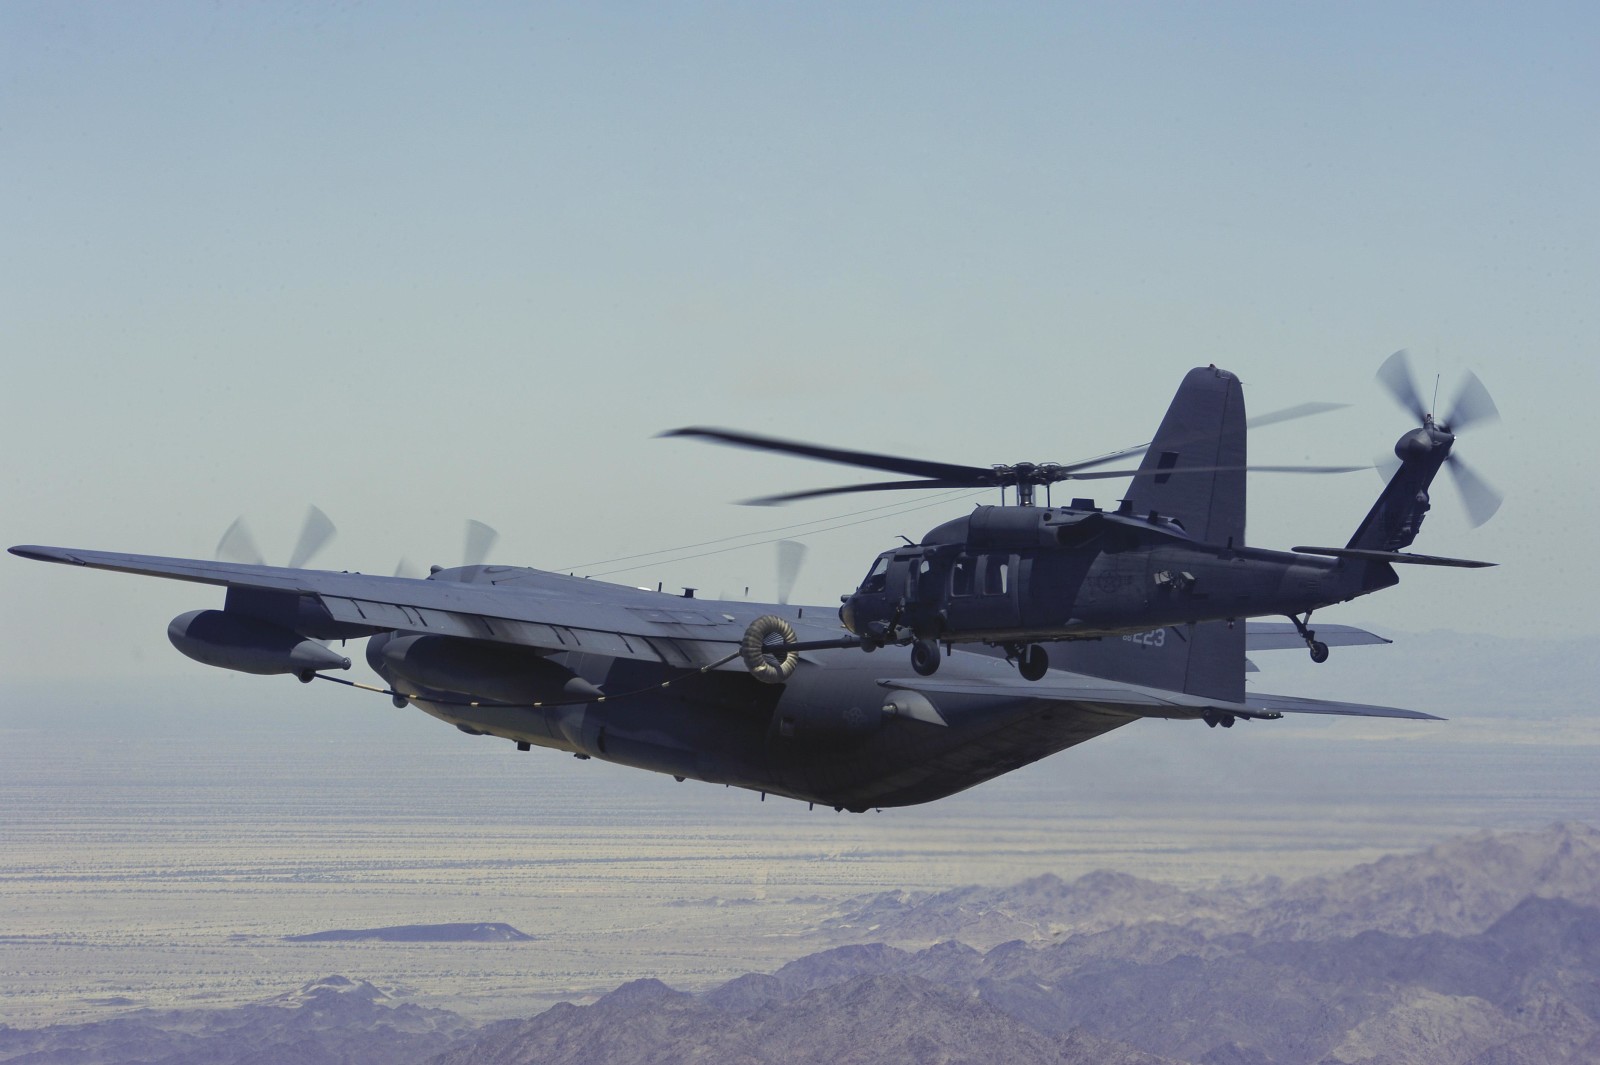 chuyến bay, máy bay, máy bay trực thăng, Vận tải quân sự, chiến đấu, Hercules, HH-60G, Pave Hawk